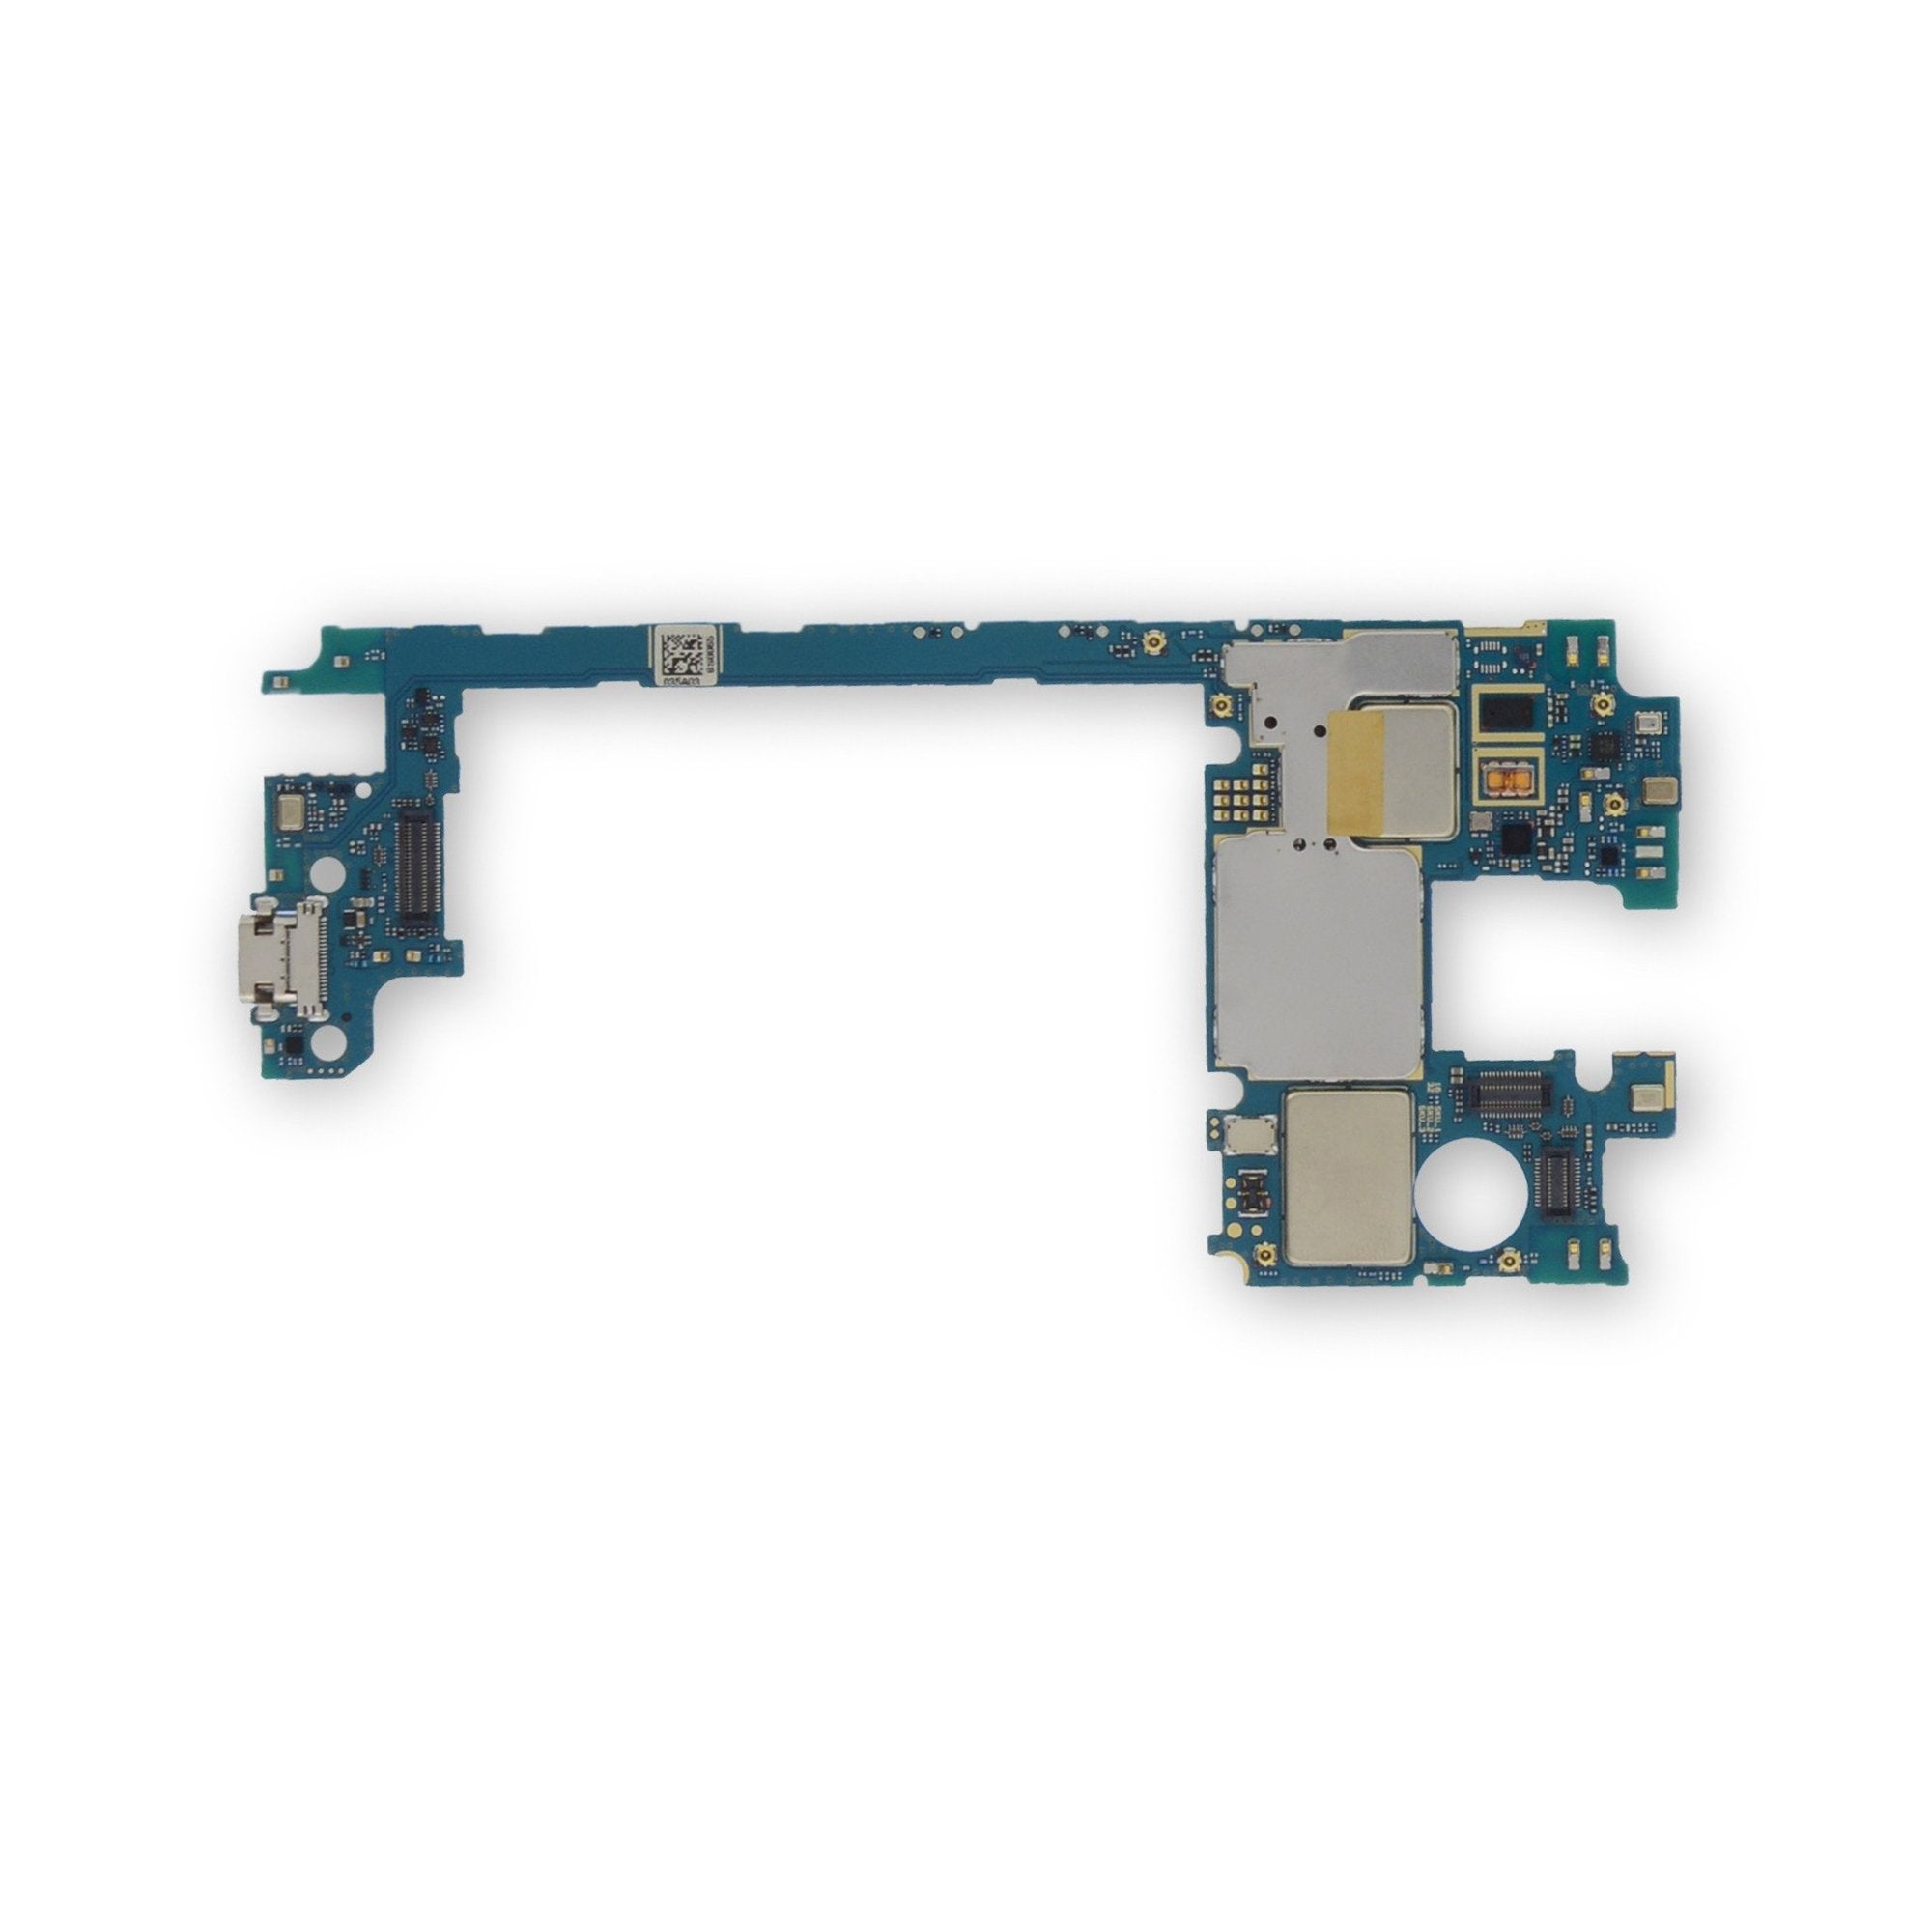 Nexus 5X (LG-H790) Motherboard 32 GB Used